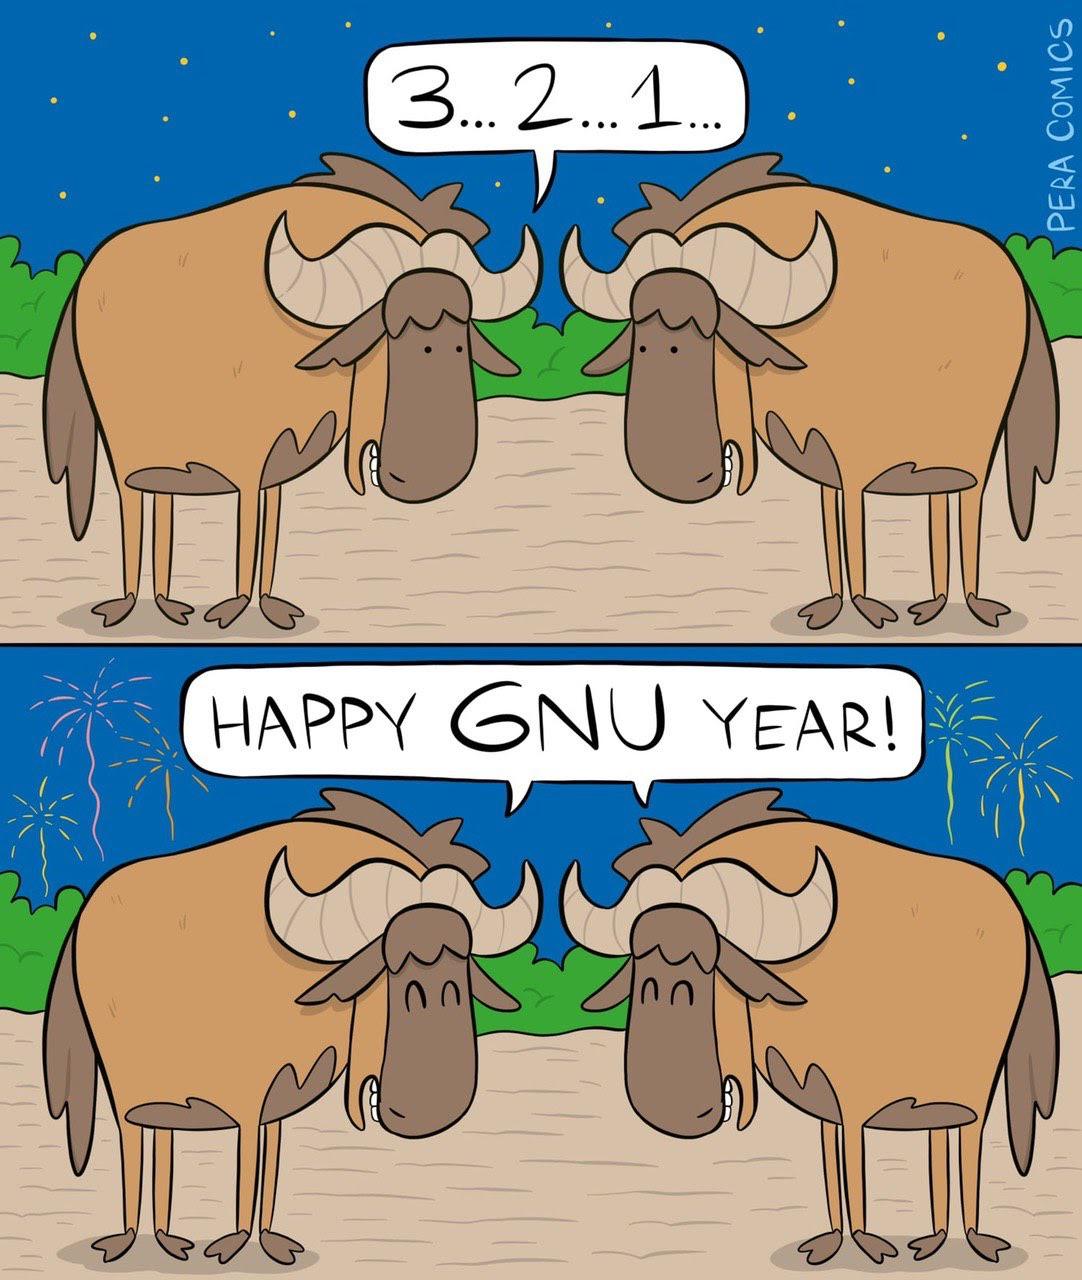 Happy GNU year!